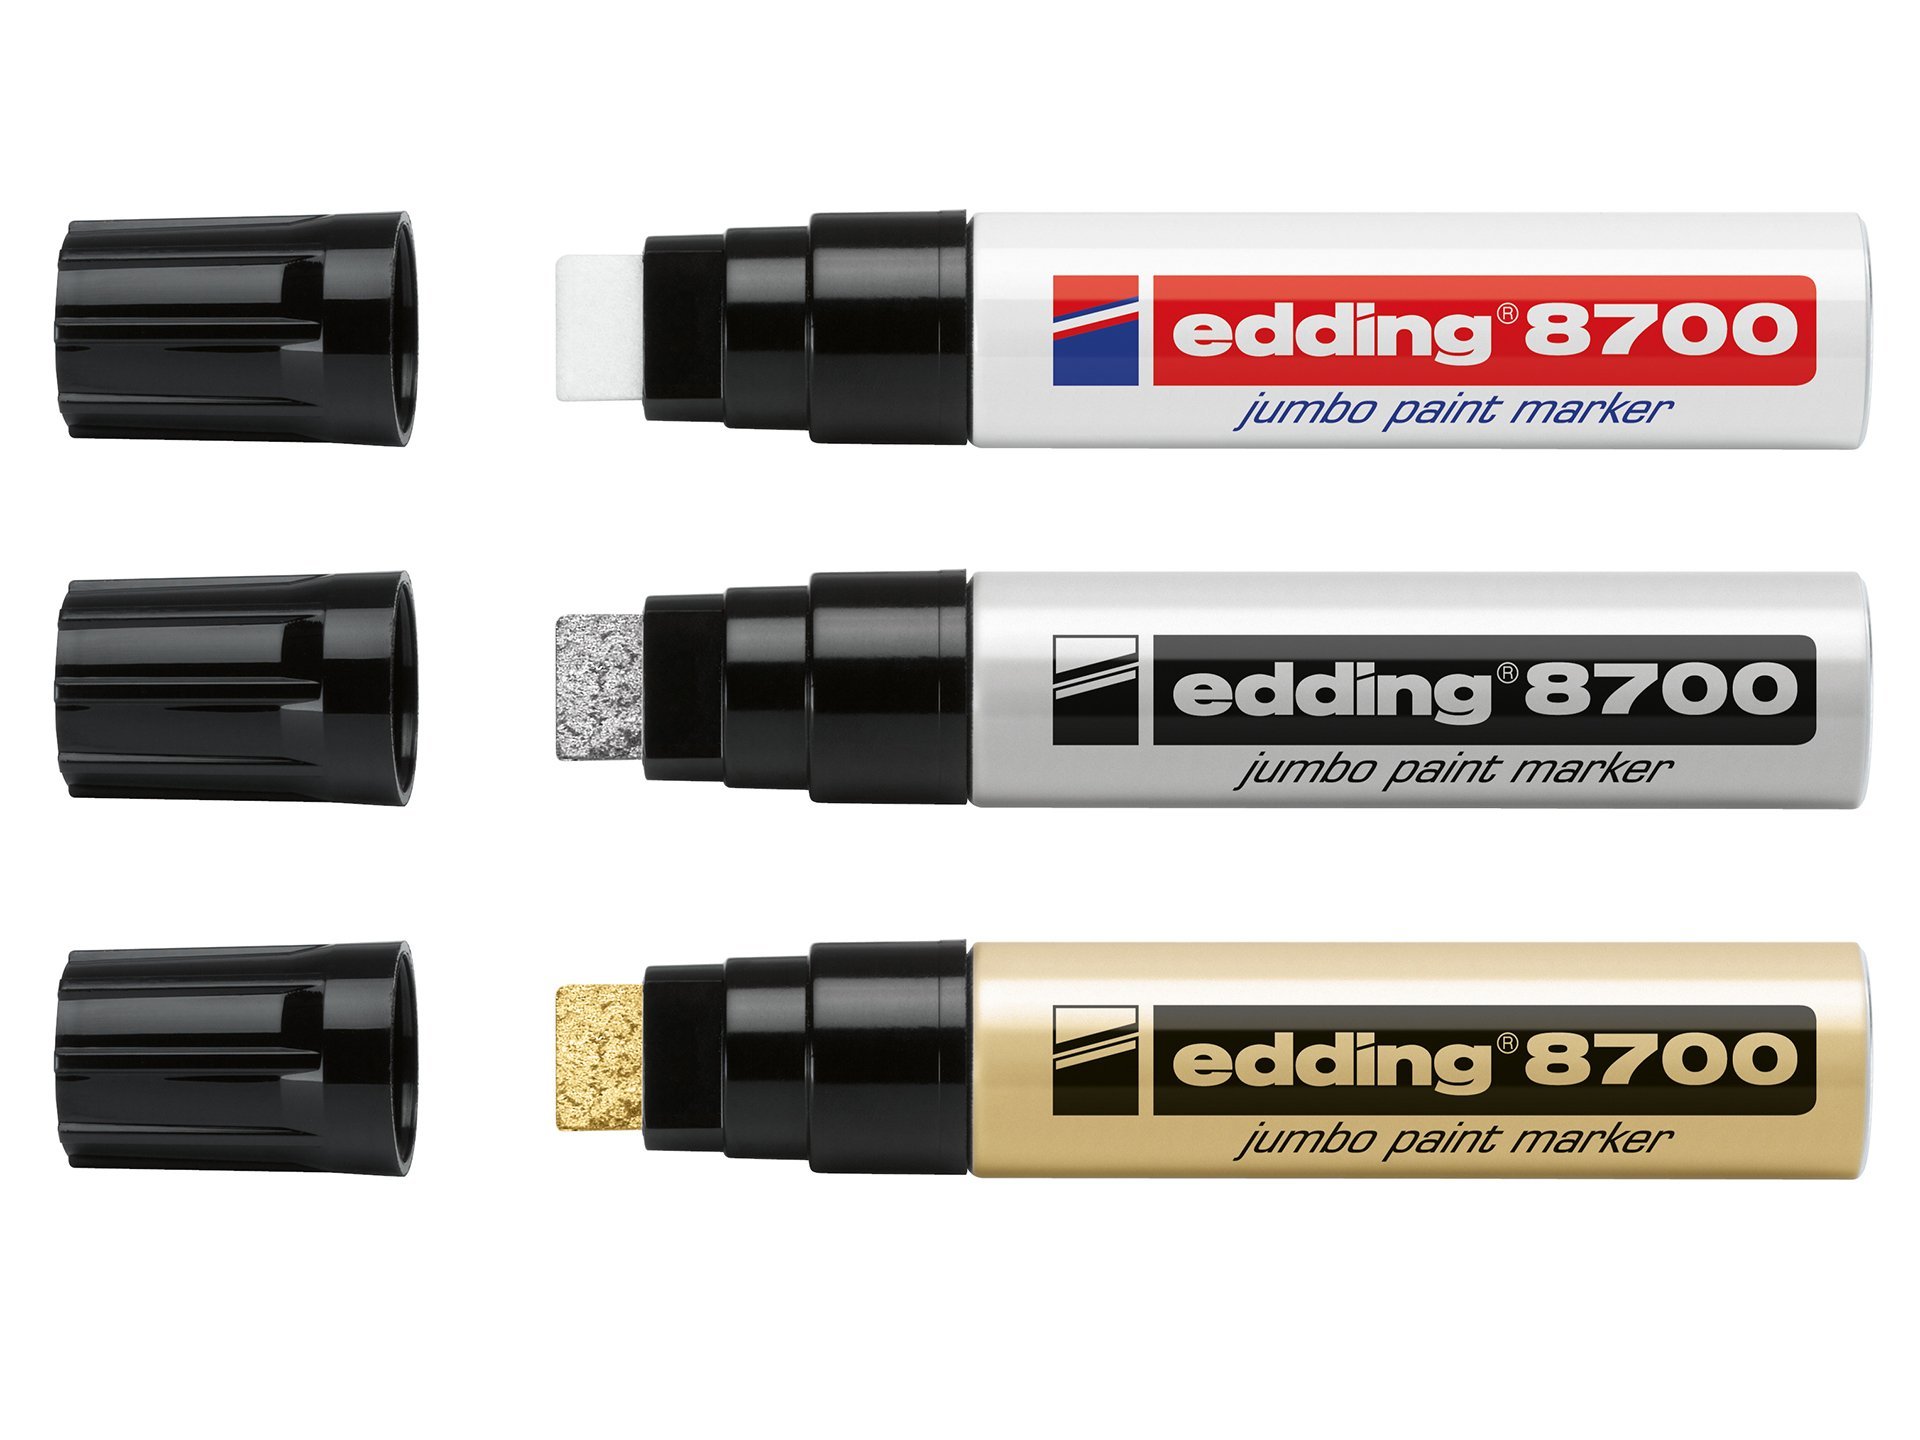 Buy Edding 8700 jumbo paint marker online at Modulor